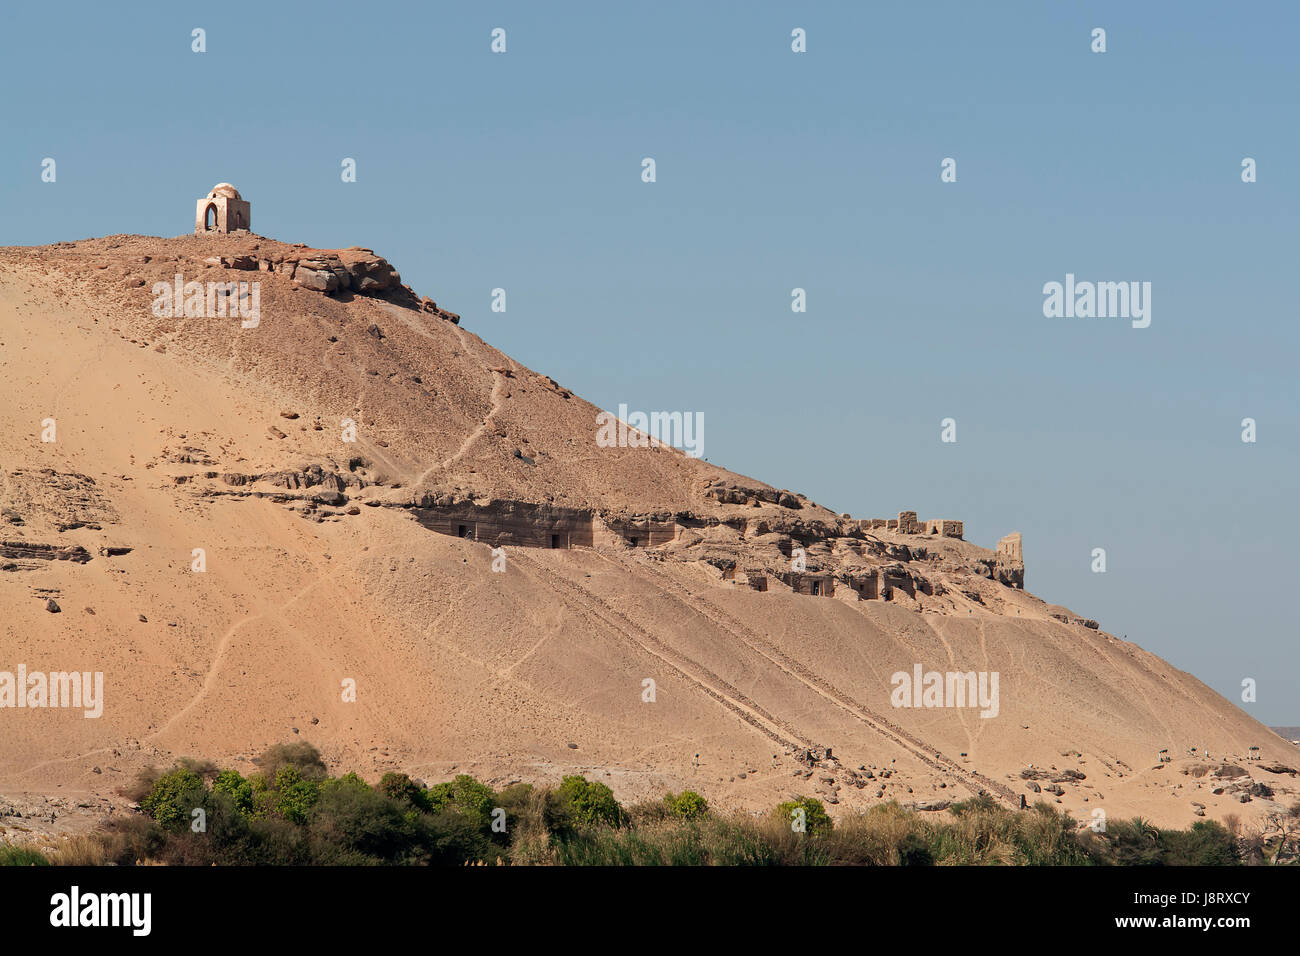 the big desert hill of aswan in egypt Stock Photo